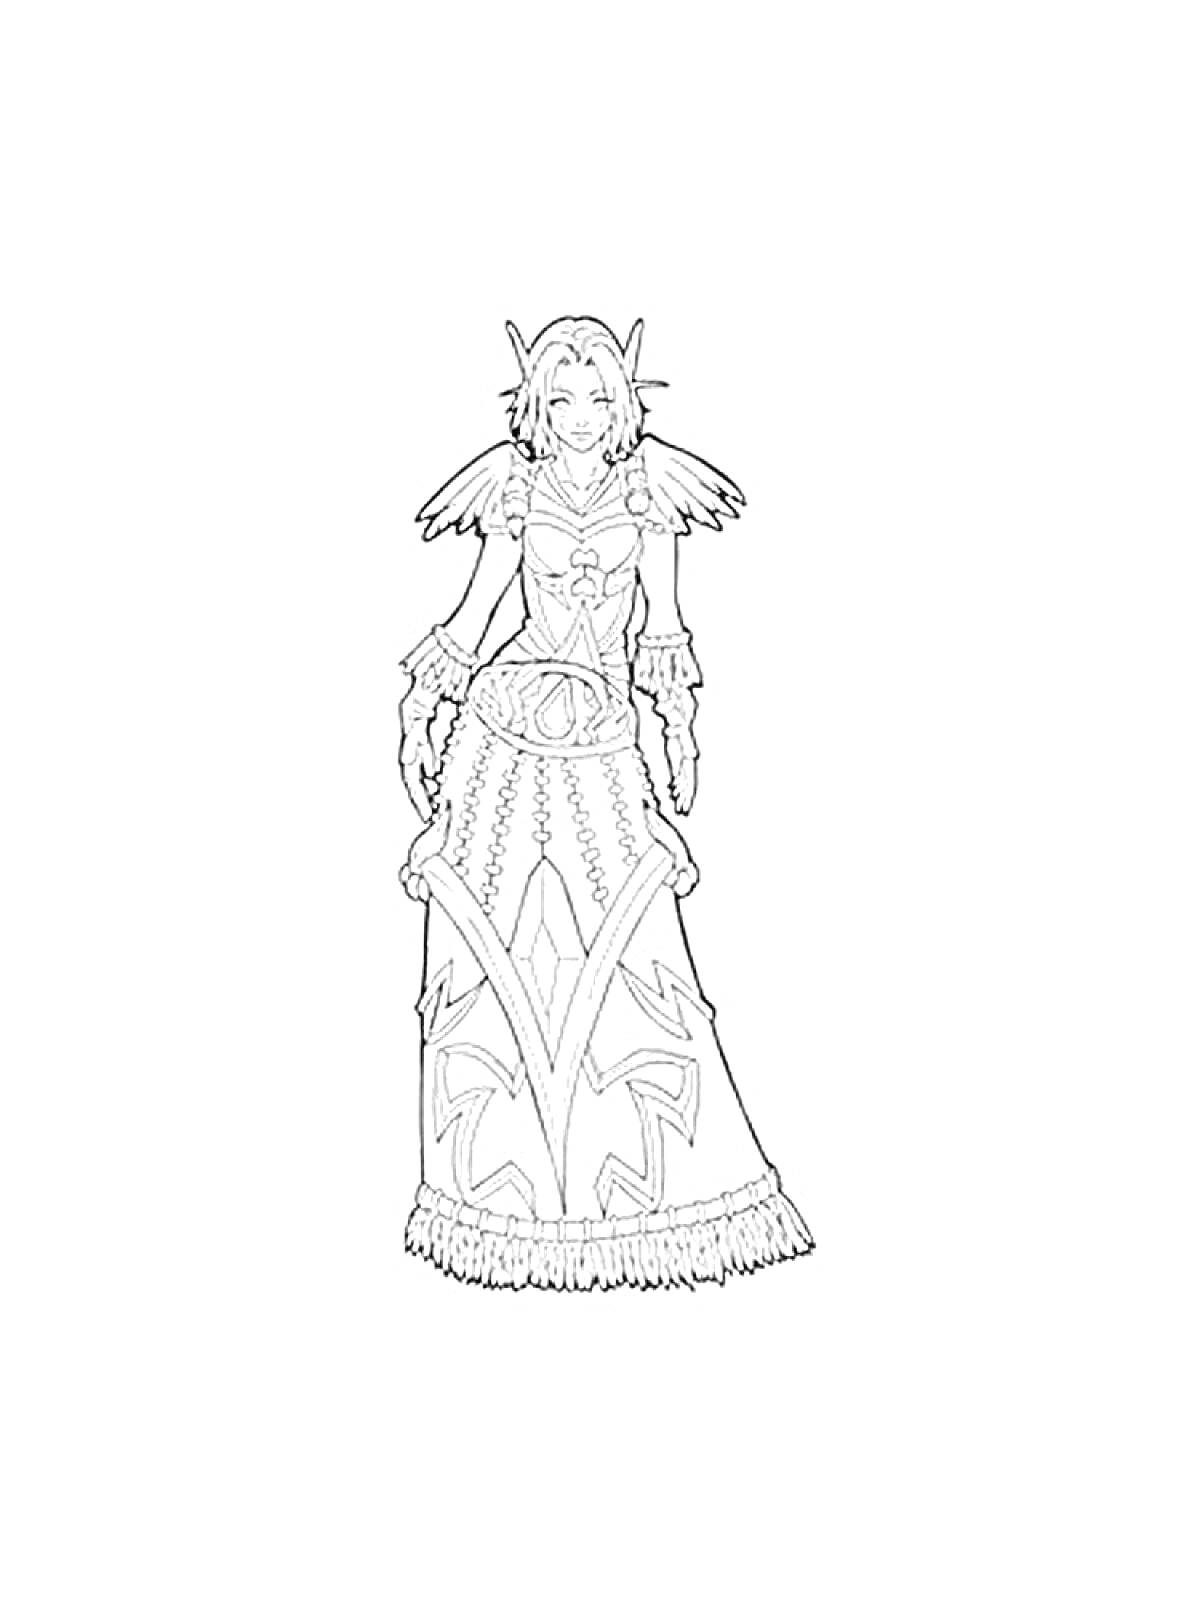 Раскраска Женский персонаж из вселенной Варкрафт в длинном платье с узорами, с крыльями на плечах и рогами на голове